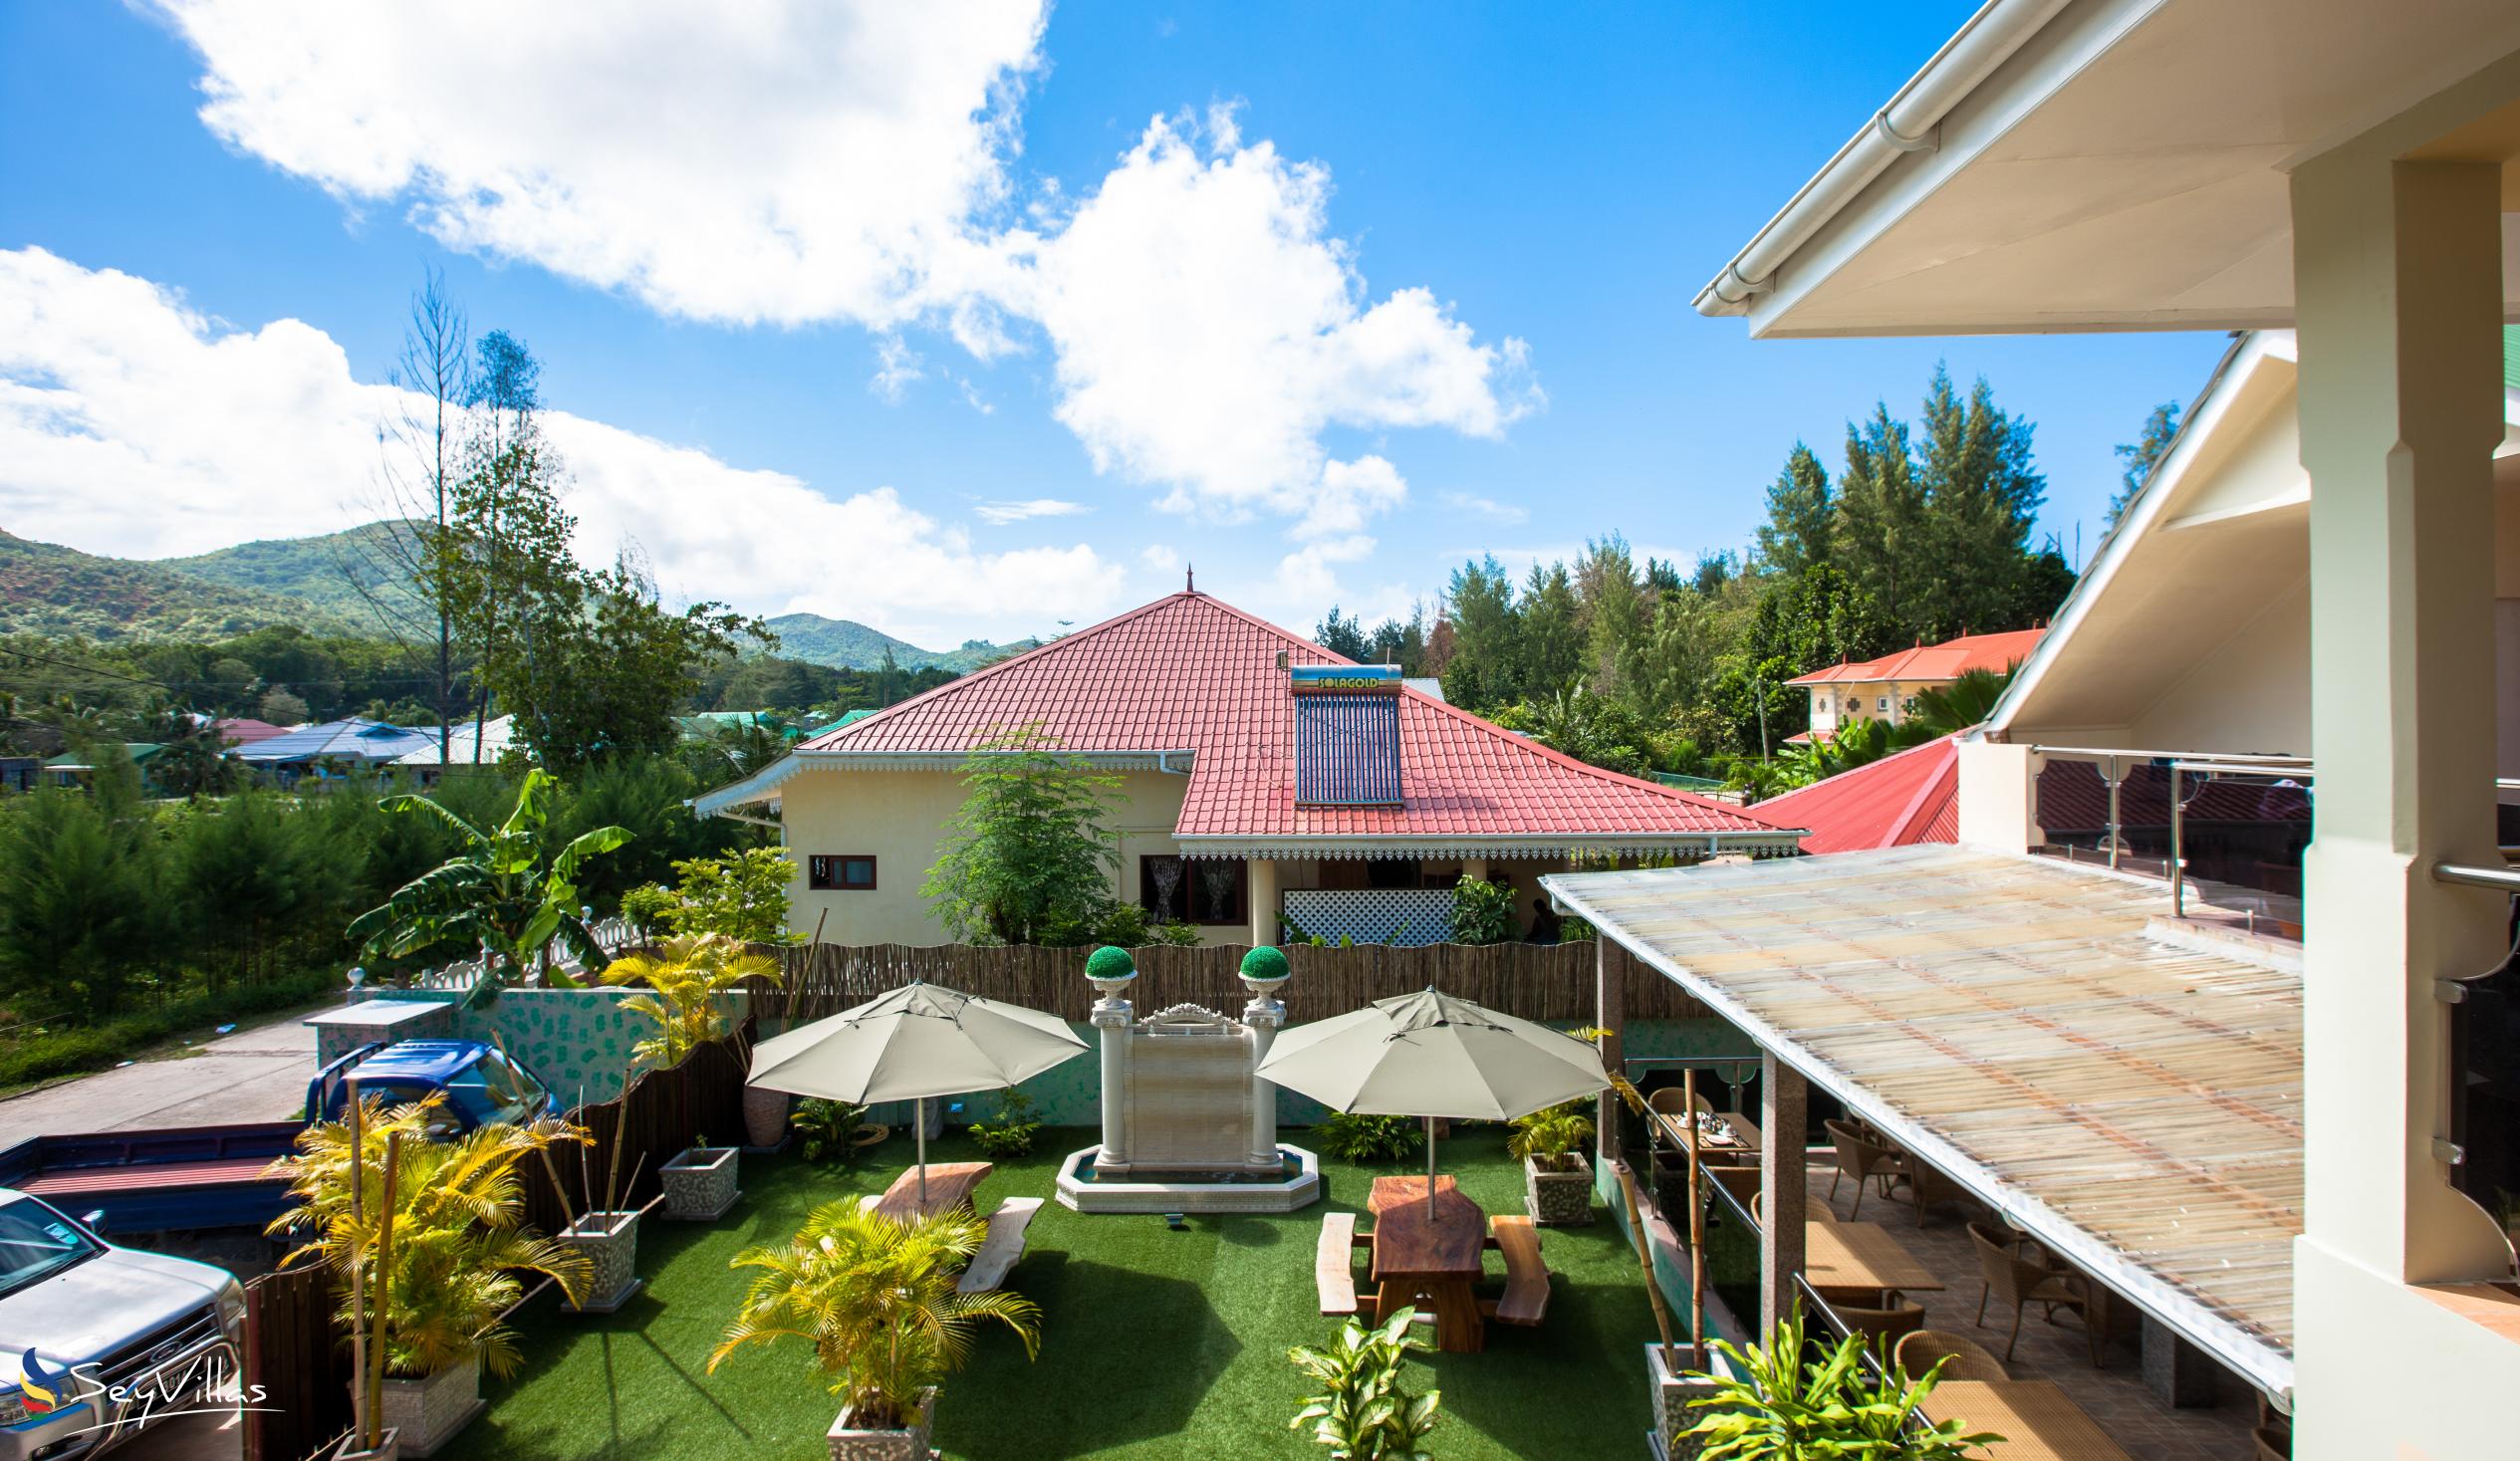 Foto 8: Chez Bea Villa - Aussenbereich - Praslin (Seychellen)